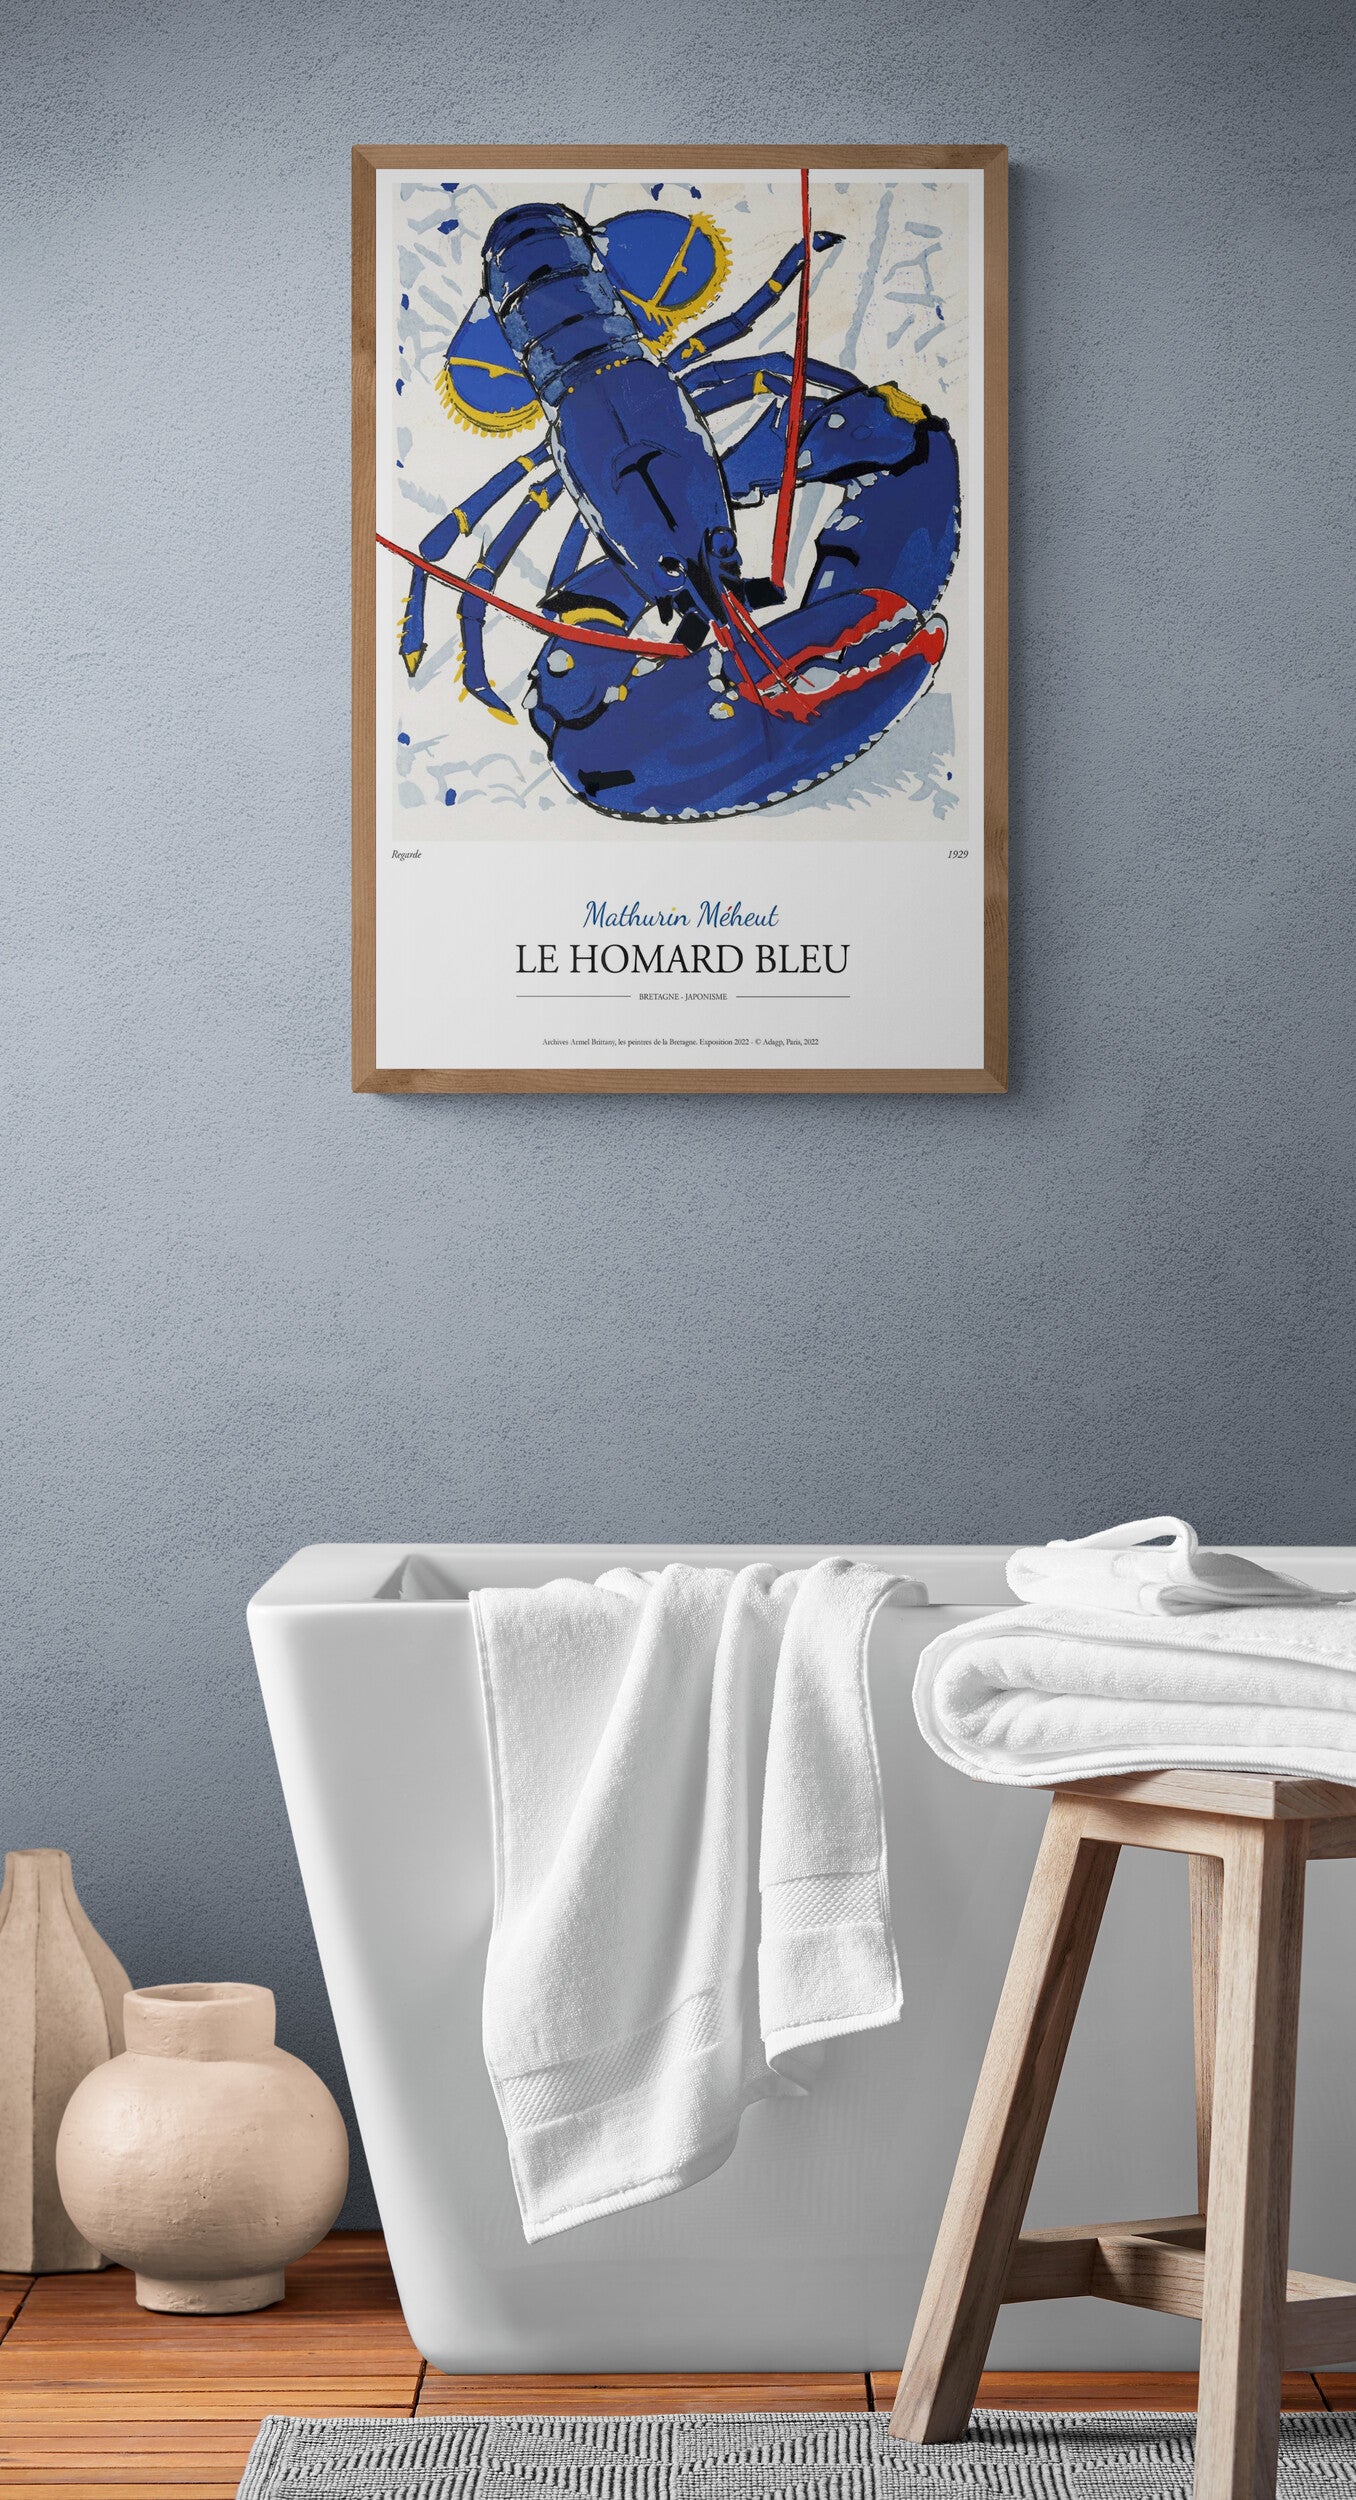 Homard bleu de mathurin meheut peintre officiel de la marine et de la bretagne artiste breton poster reproduction marque bretagne